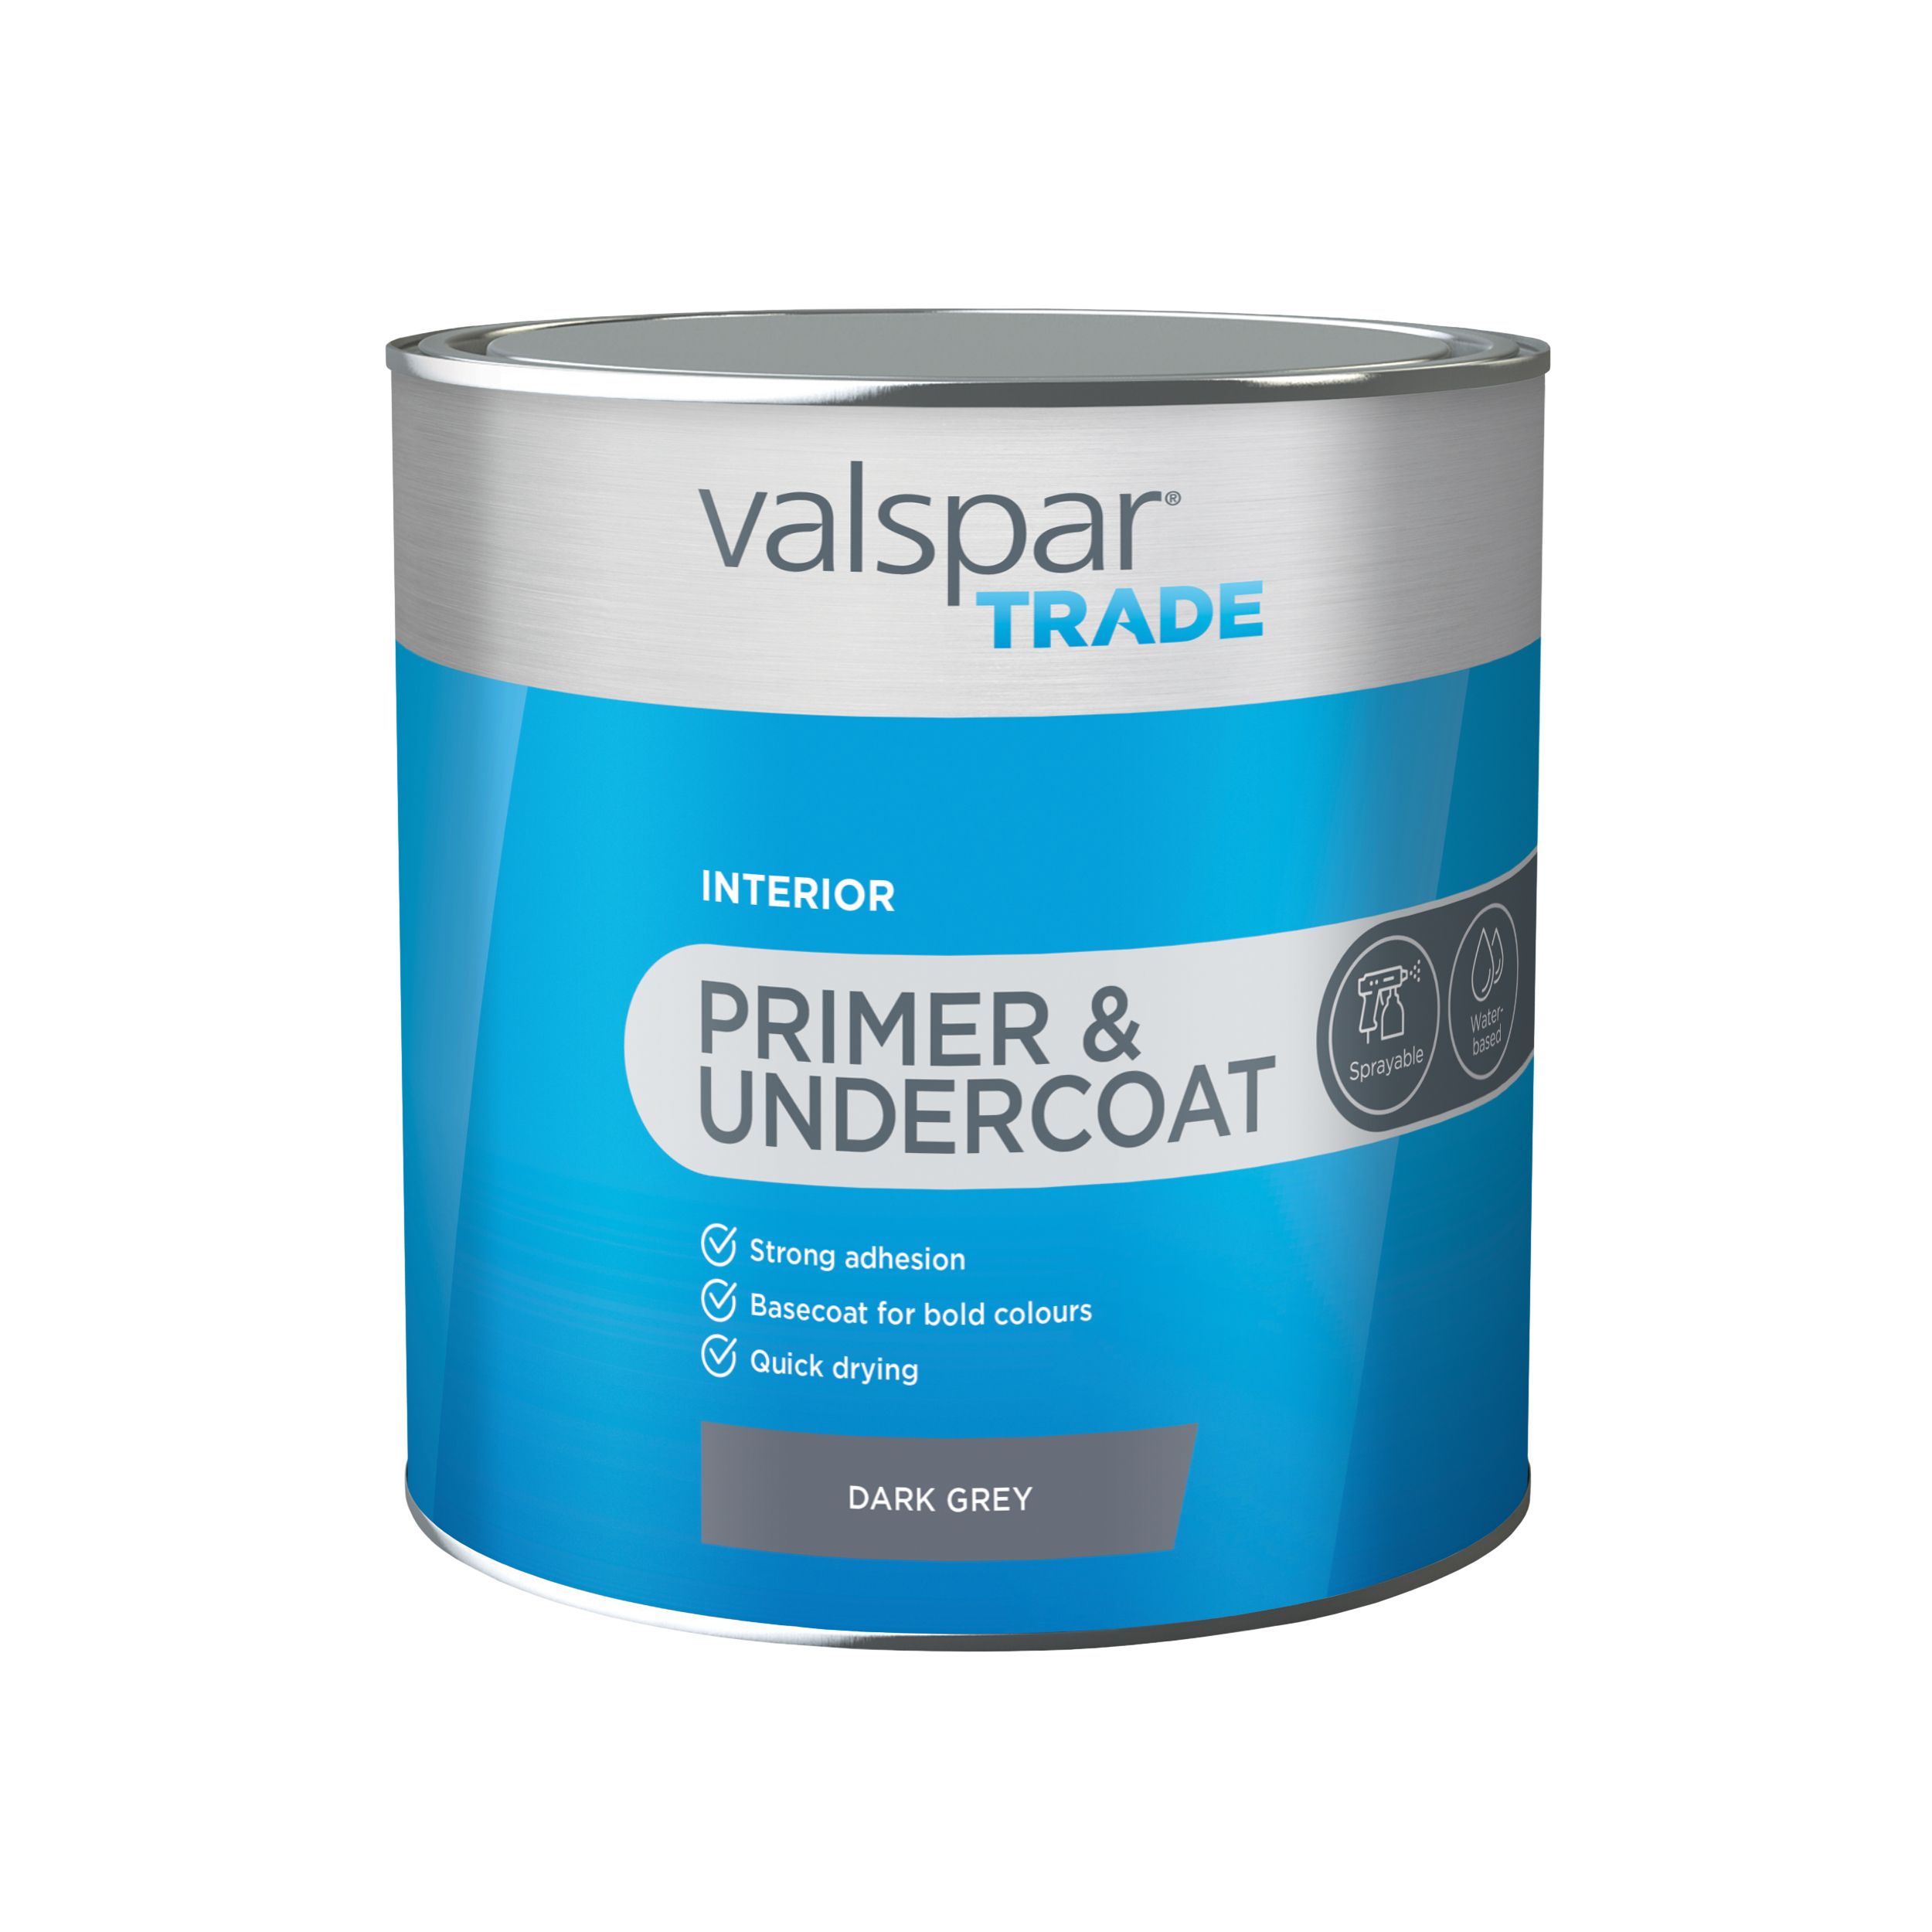 Valspar Trade Primer & Undercoat Dark grey Matt Wood Primer, 2.5L